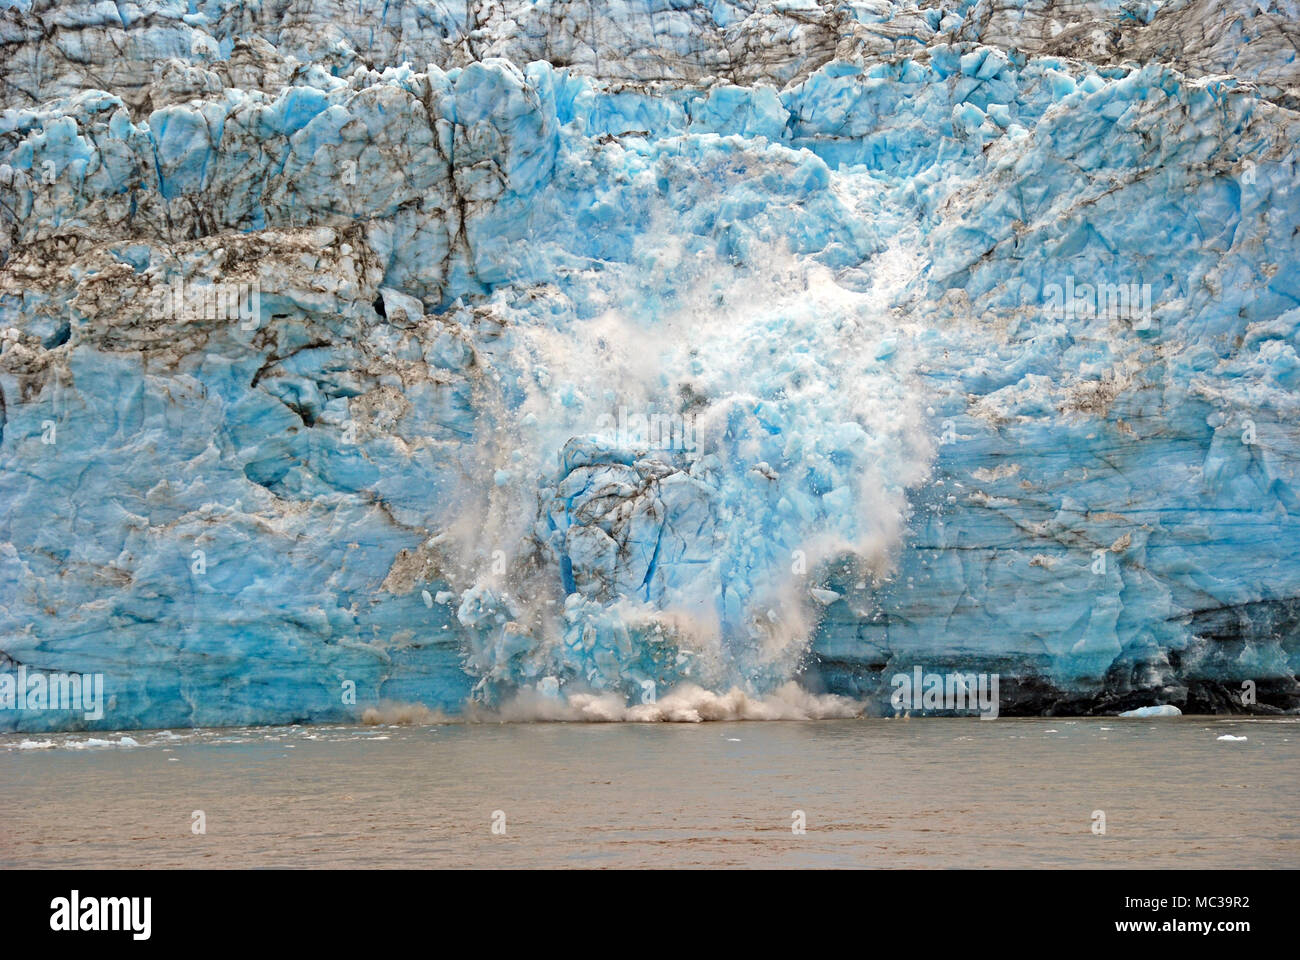 Calving of the Childs Glacier into the Copper River near Cordova, Alaska Stock Photo